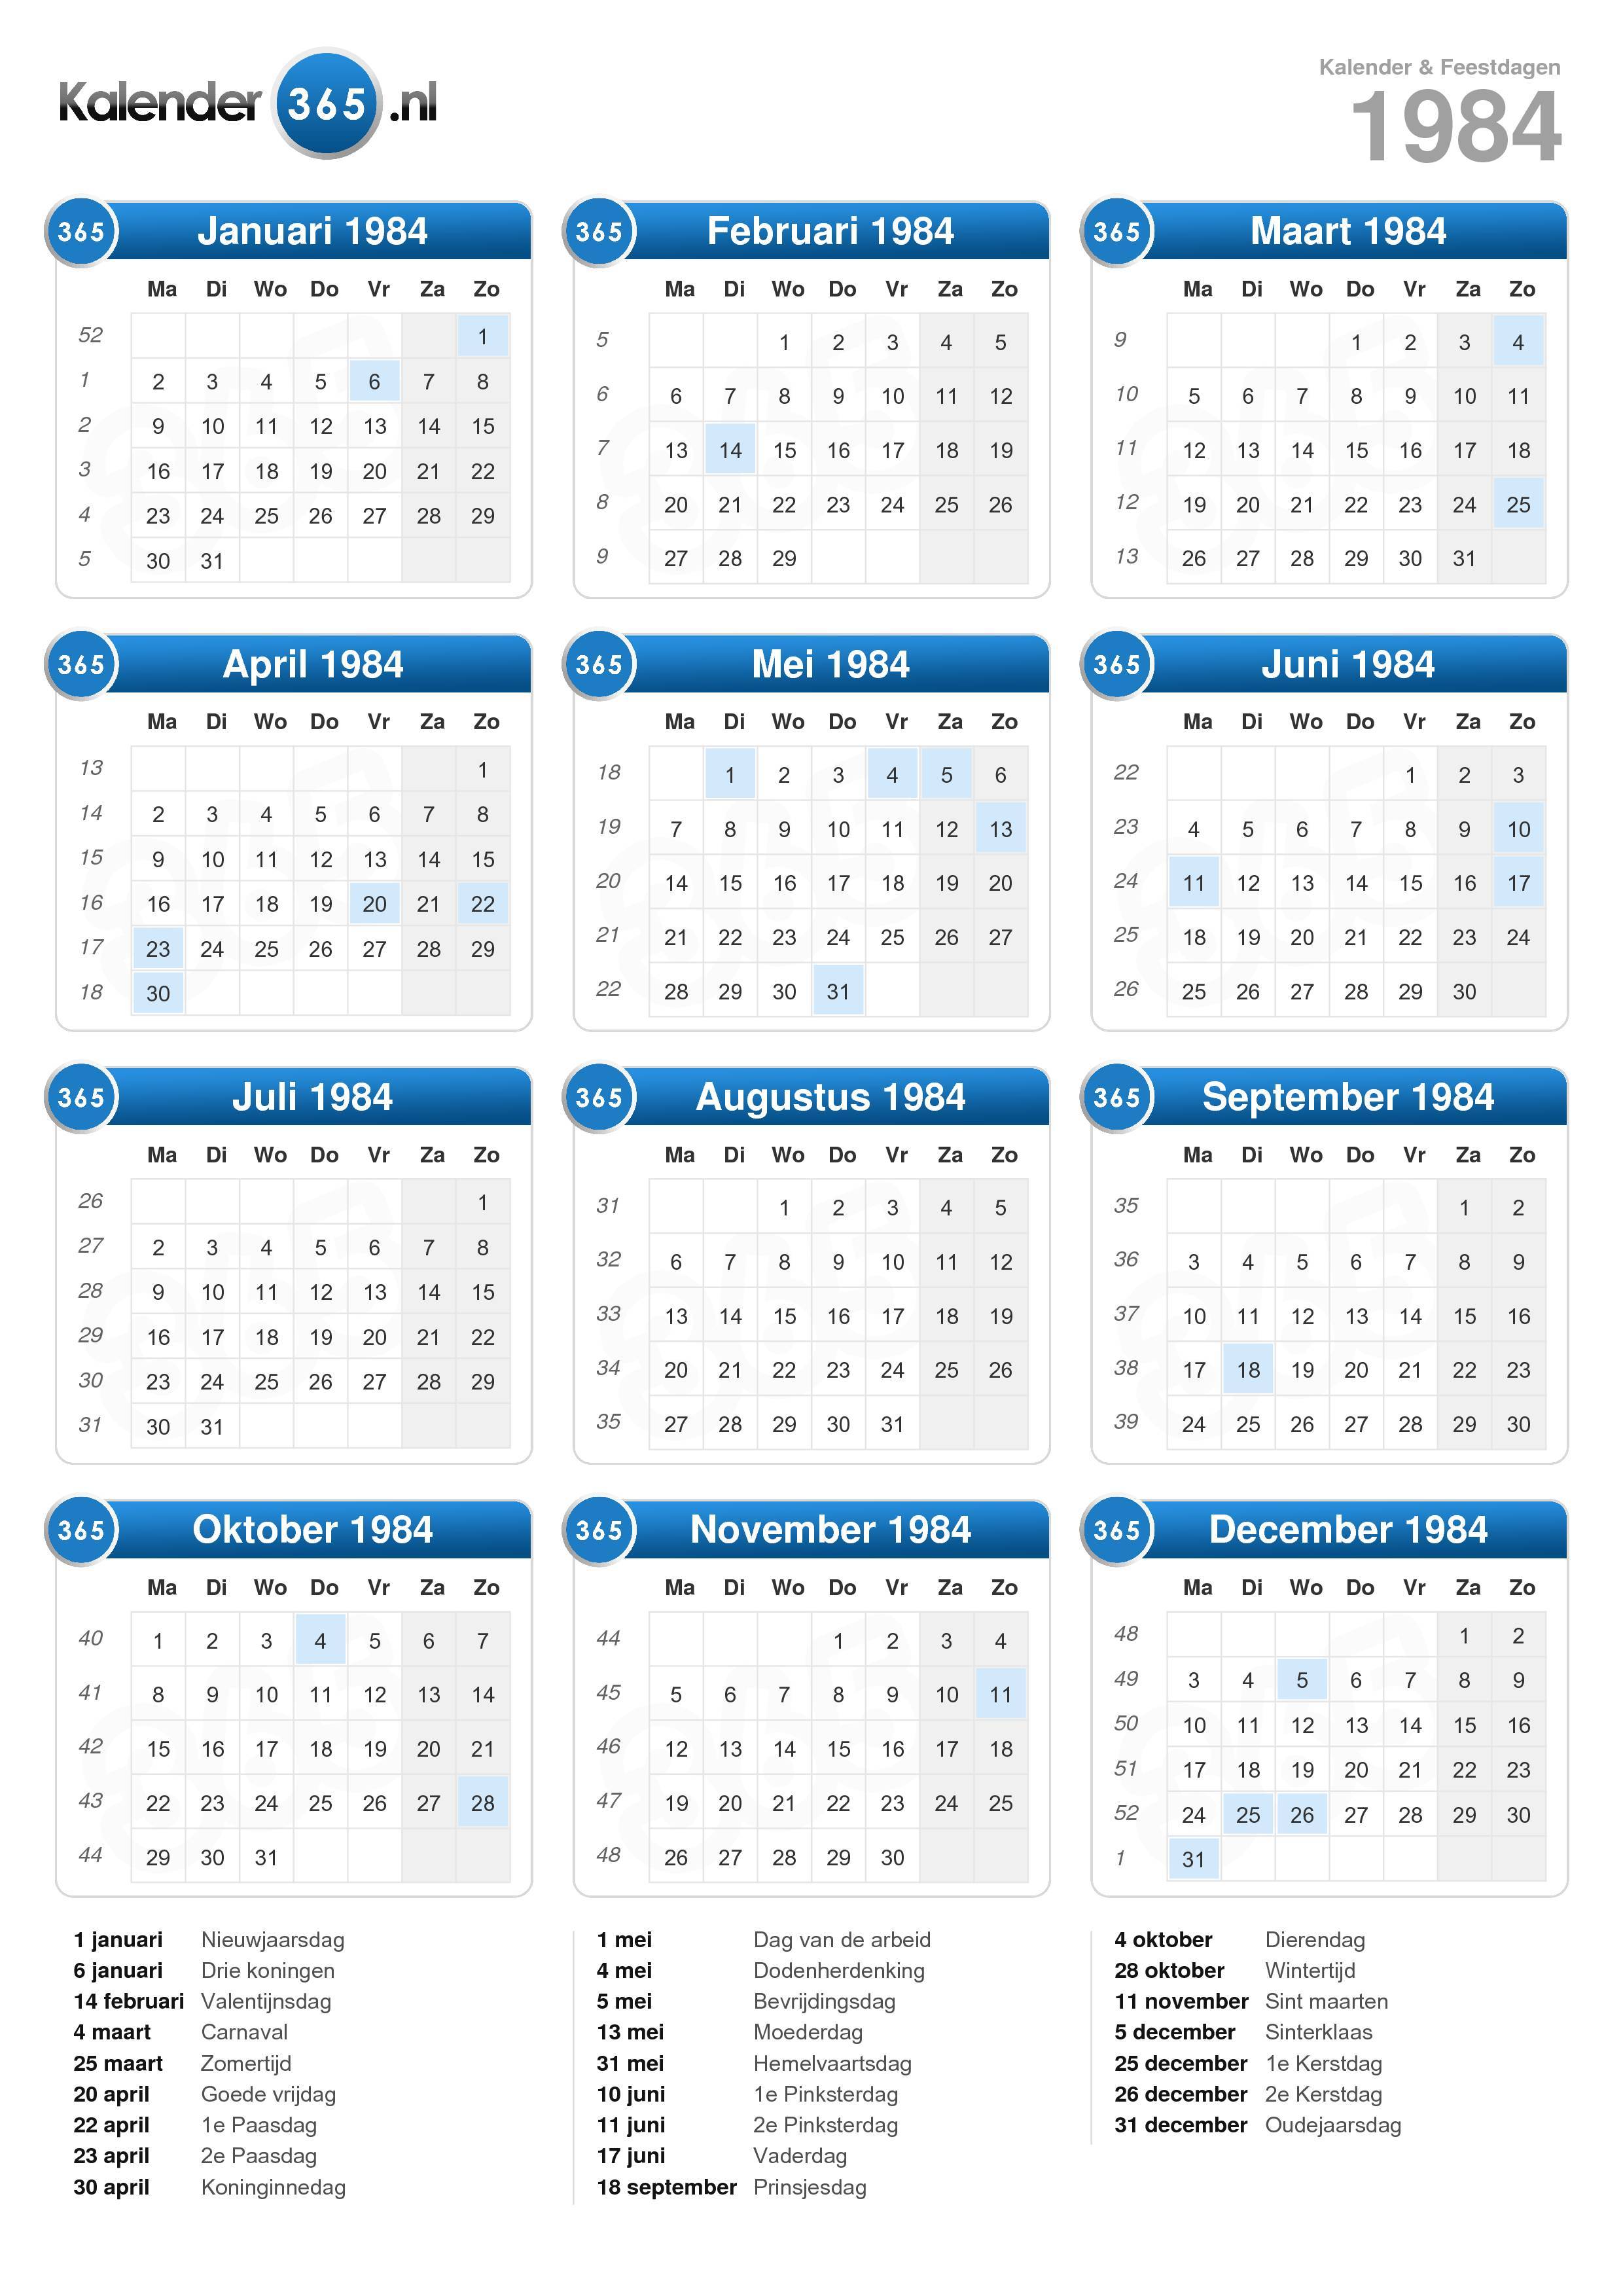 Kalender jawa nopember 2021